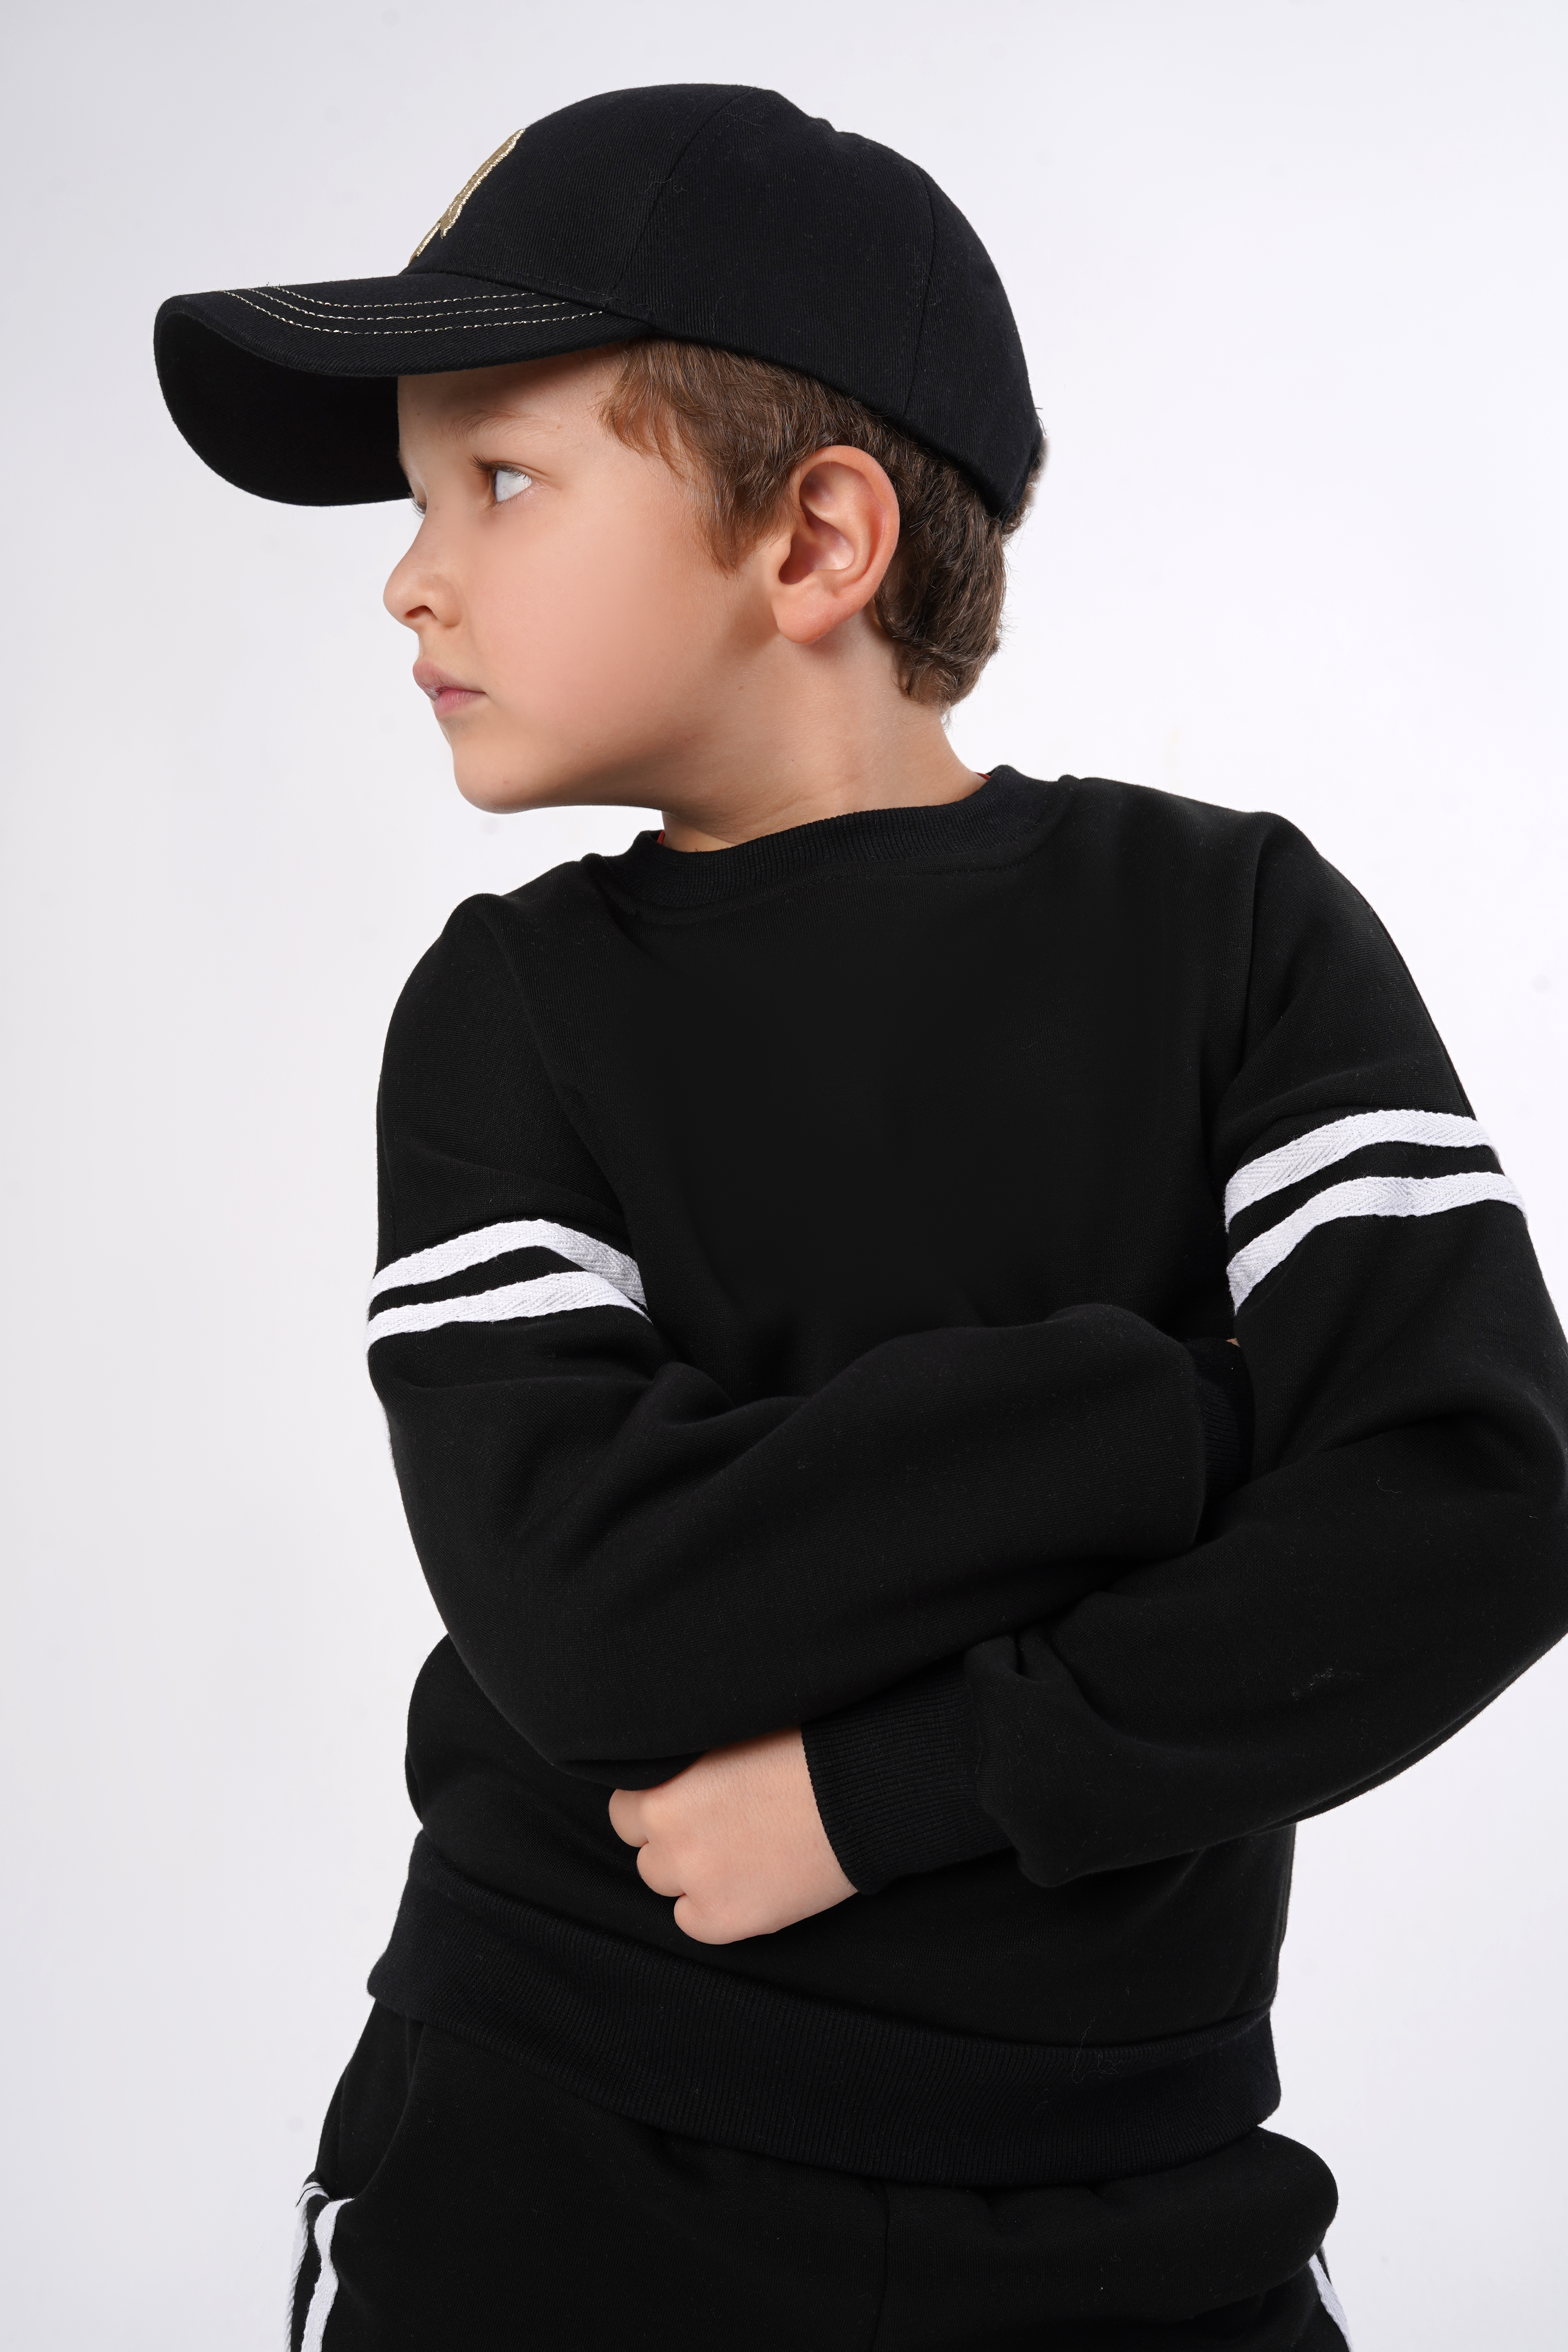 Спортивный костюм BabyDreams KS10/черный костюм для малыша - фото 5